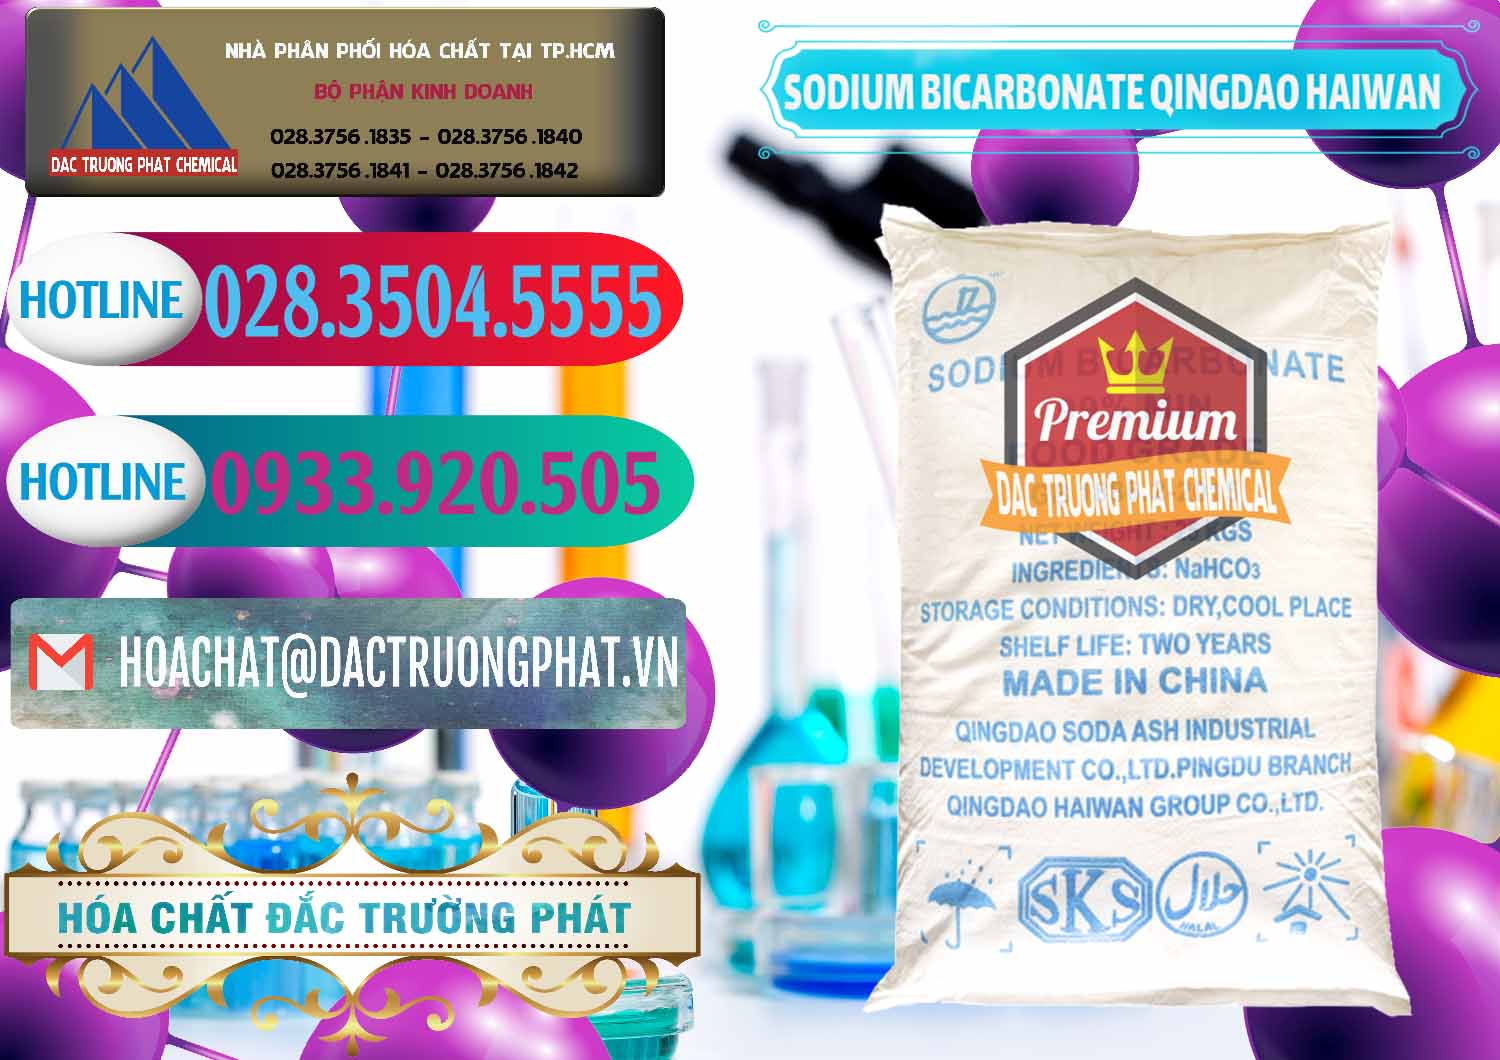 Cty chuyên bán _ cung ứng Sodium Bicarbonate – Bicar NaHCO3 Food Grade Qingdao Haiwan Trung Quốc China - 0258 - Chuyên phân phối và nhập khẩu hóa chất tại TP.HCM - truongphat.vn